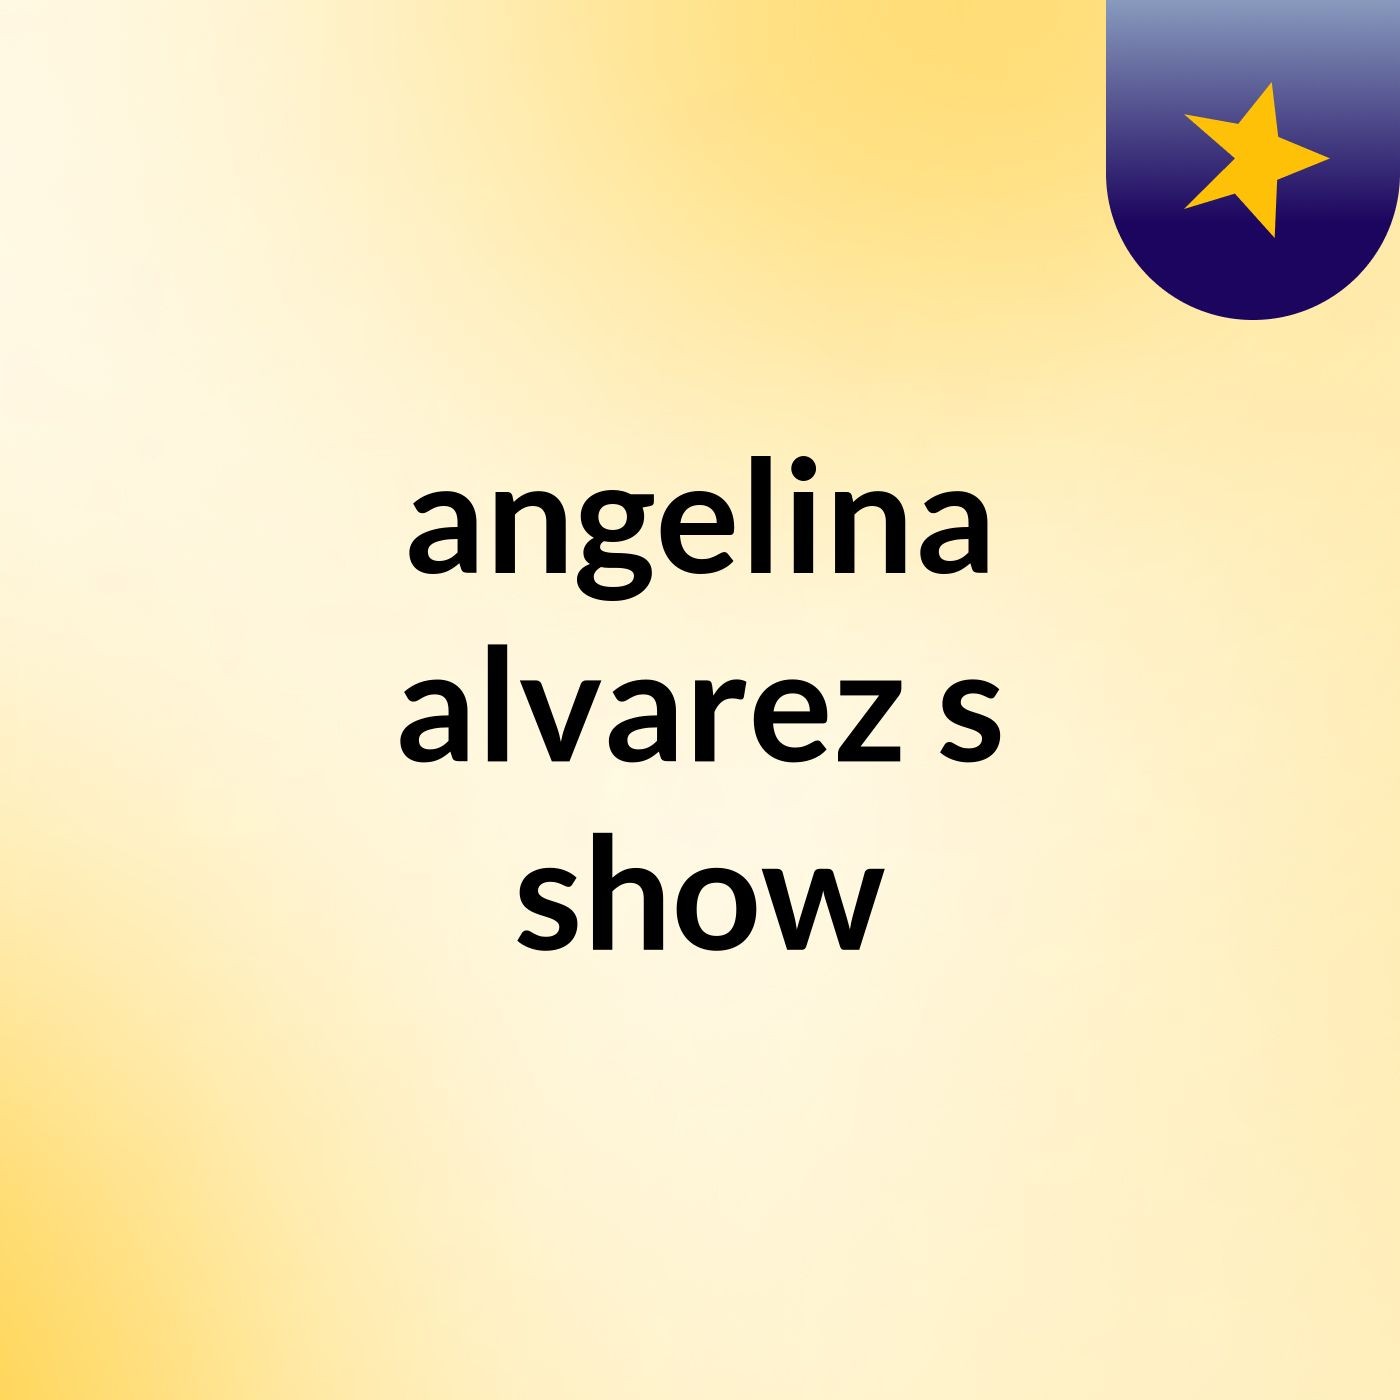 Episode 3 - angelina alvarez's show